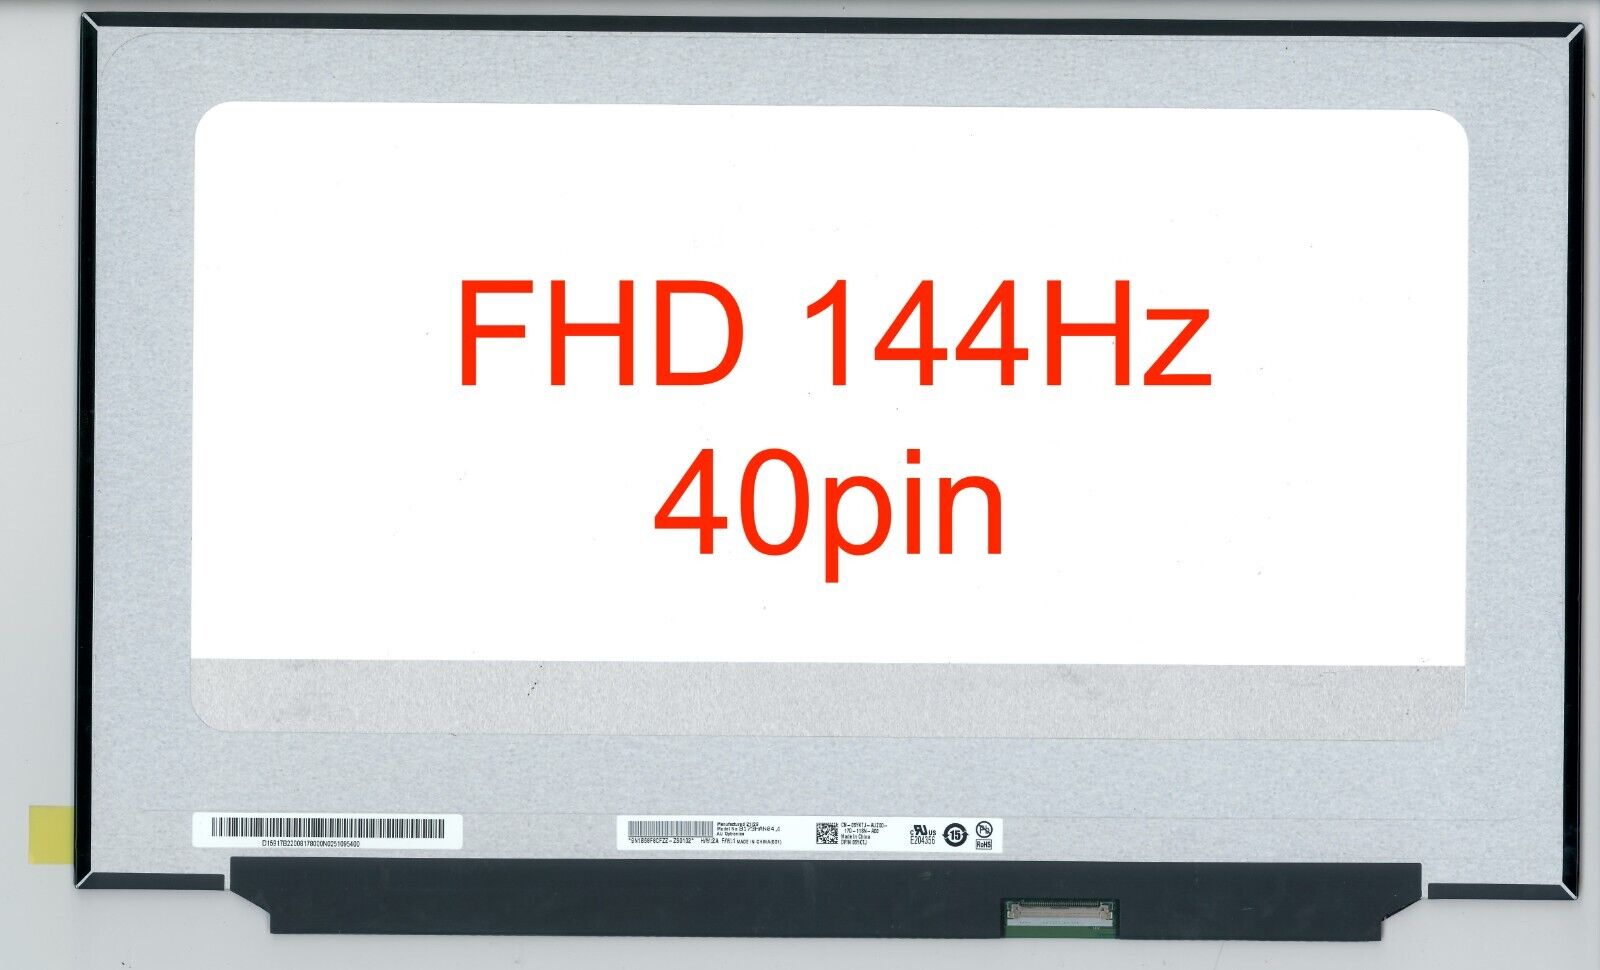 AUO B173HAN04.4 HW:0A 1A 2A 3A 4A 144Hz 40pin Matte FHD 1080p Display LCD Screen